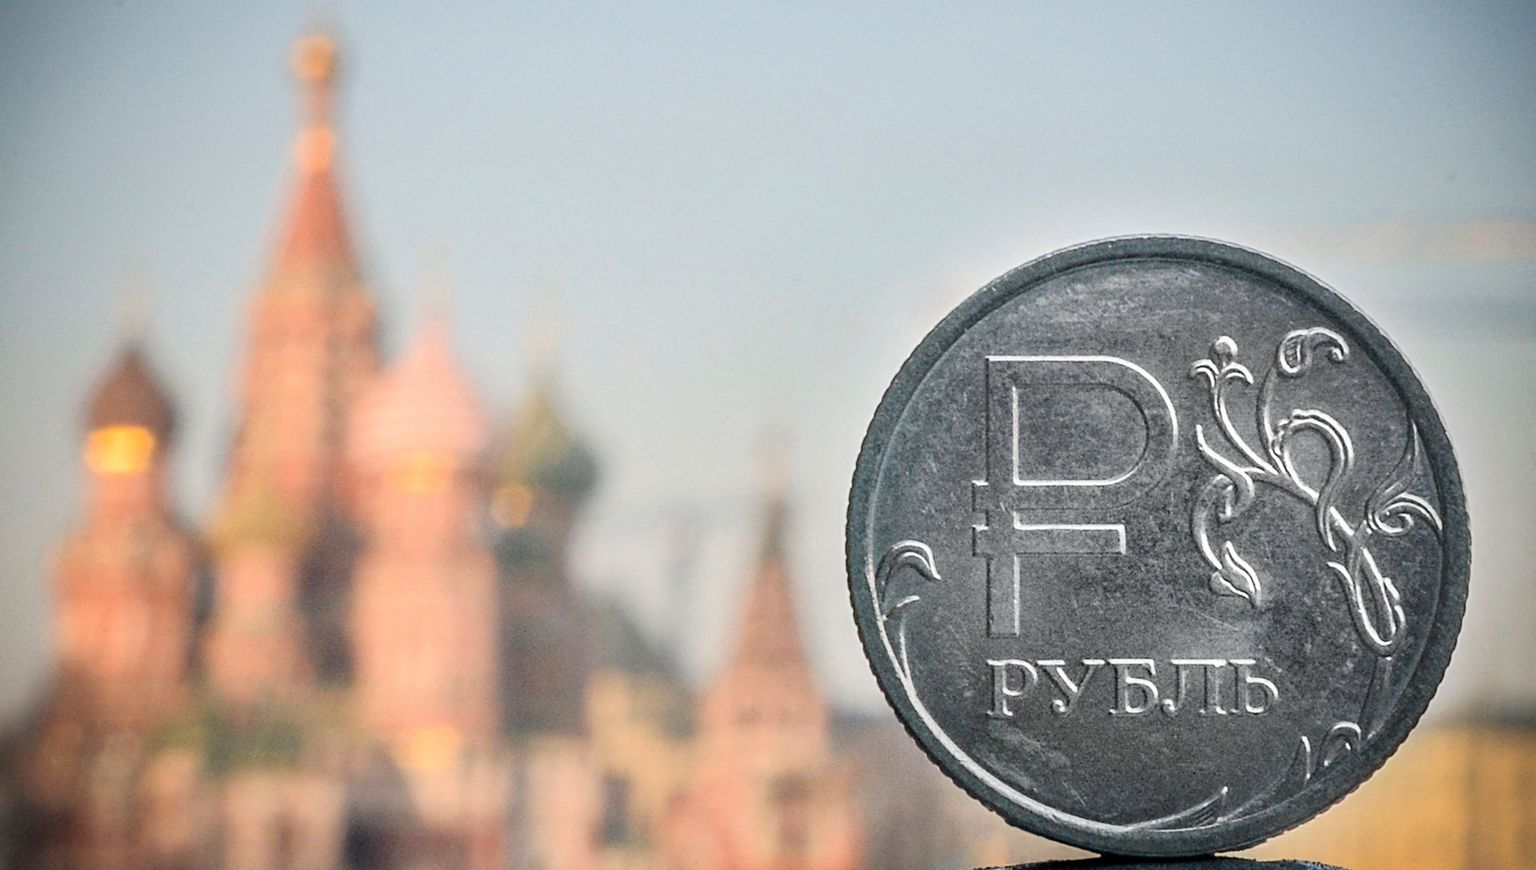 Venemaa eelarve langeb tänavu sügavasse puudujääki. Odavneb ka Vene rubla, mille kurss on euro suhtes viimase kolme kuuga langenud juba veerandi võrra.